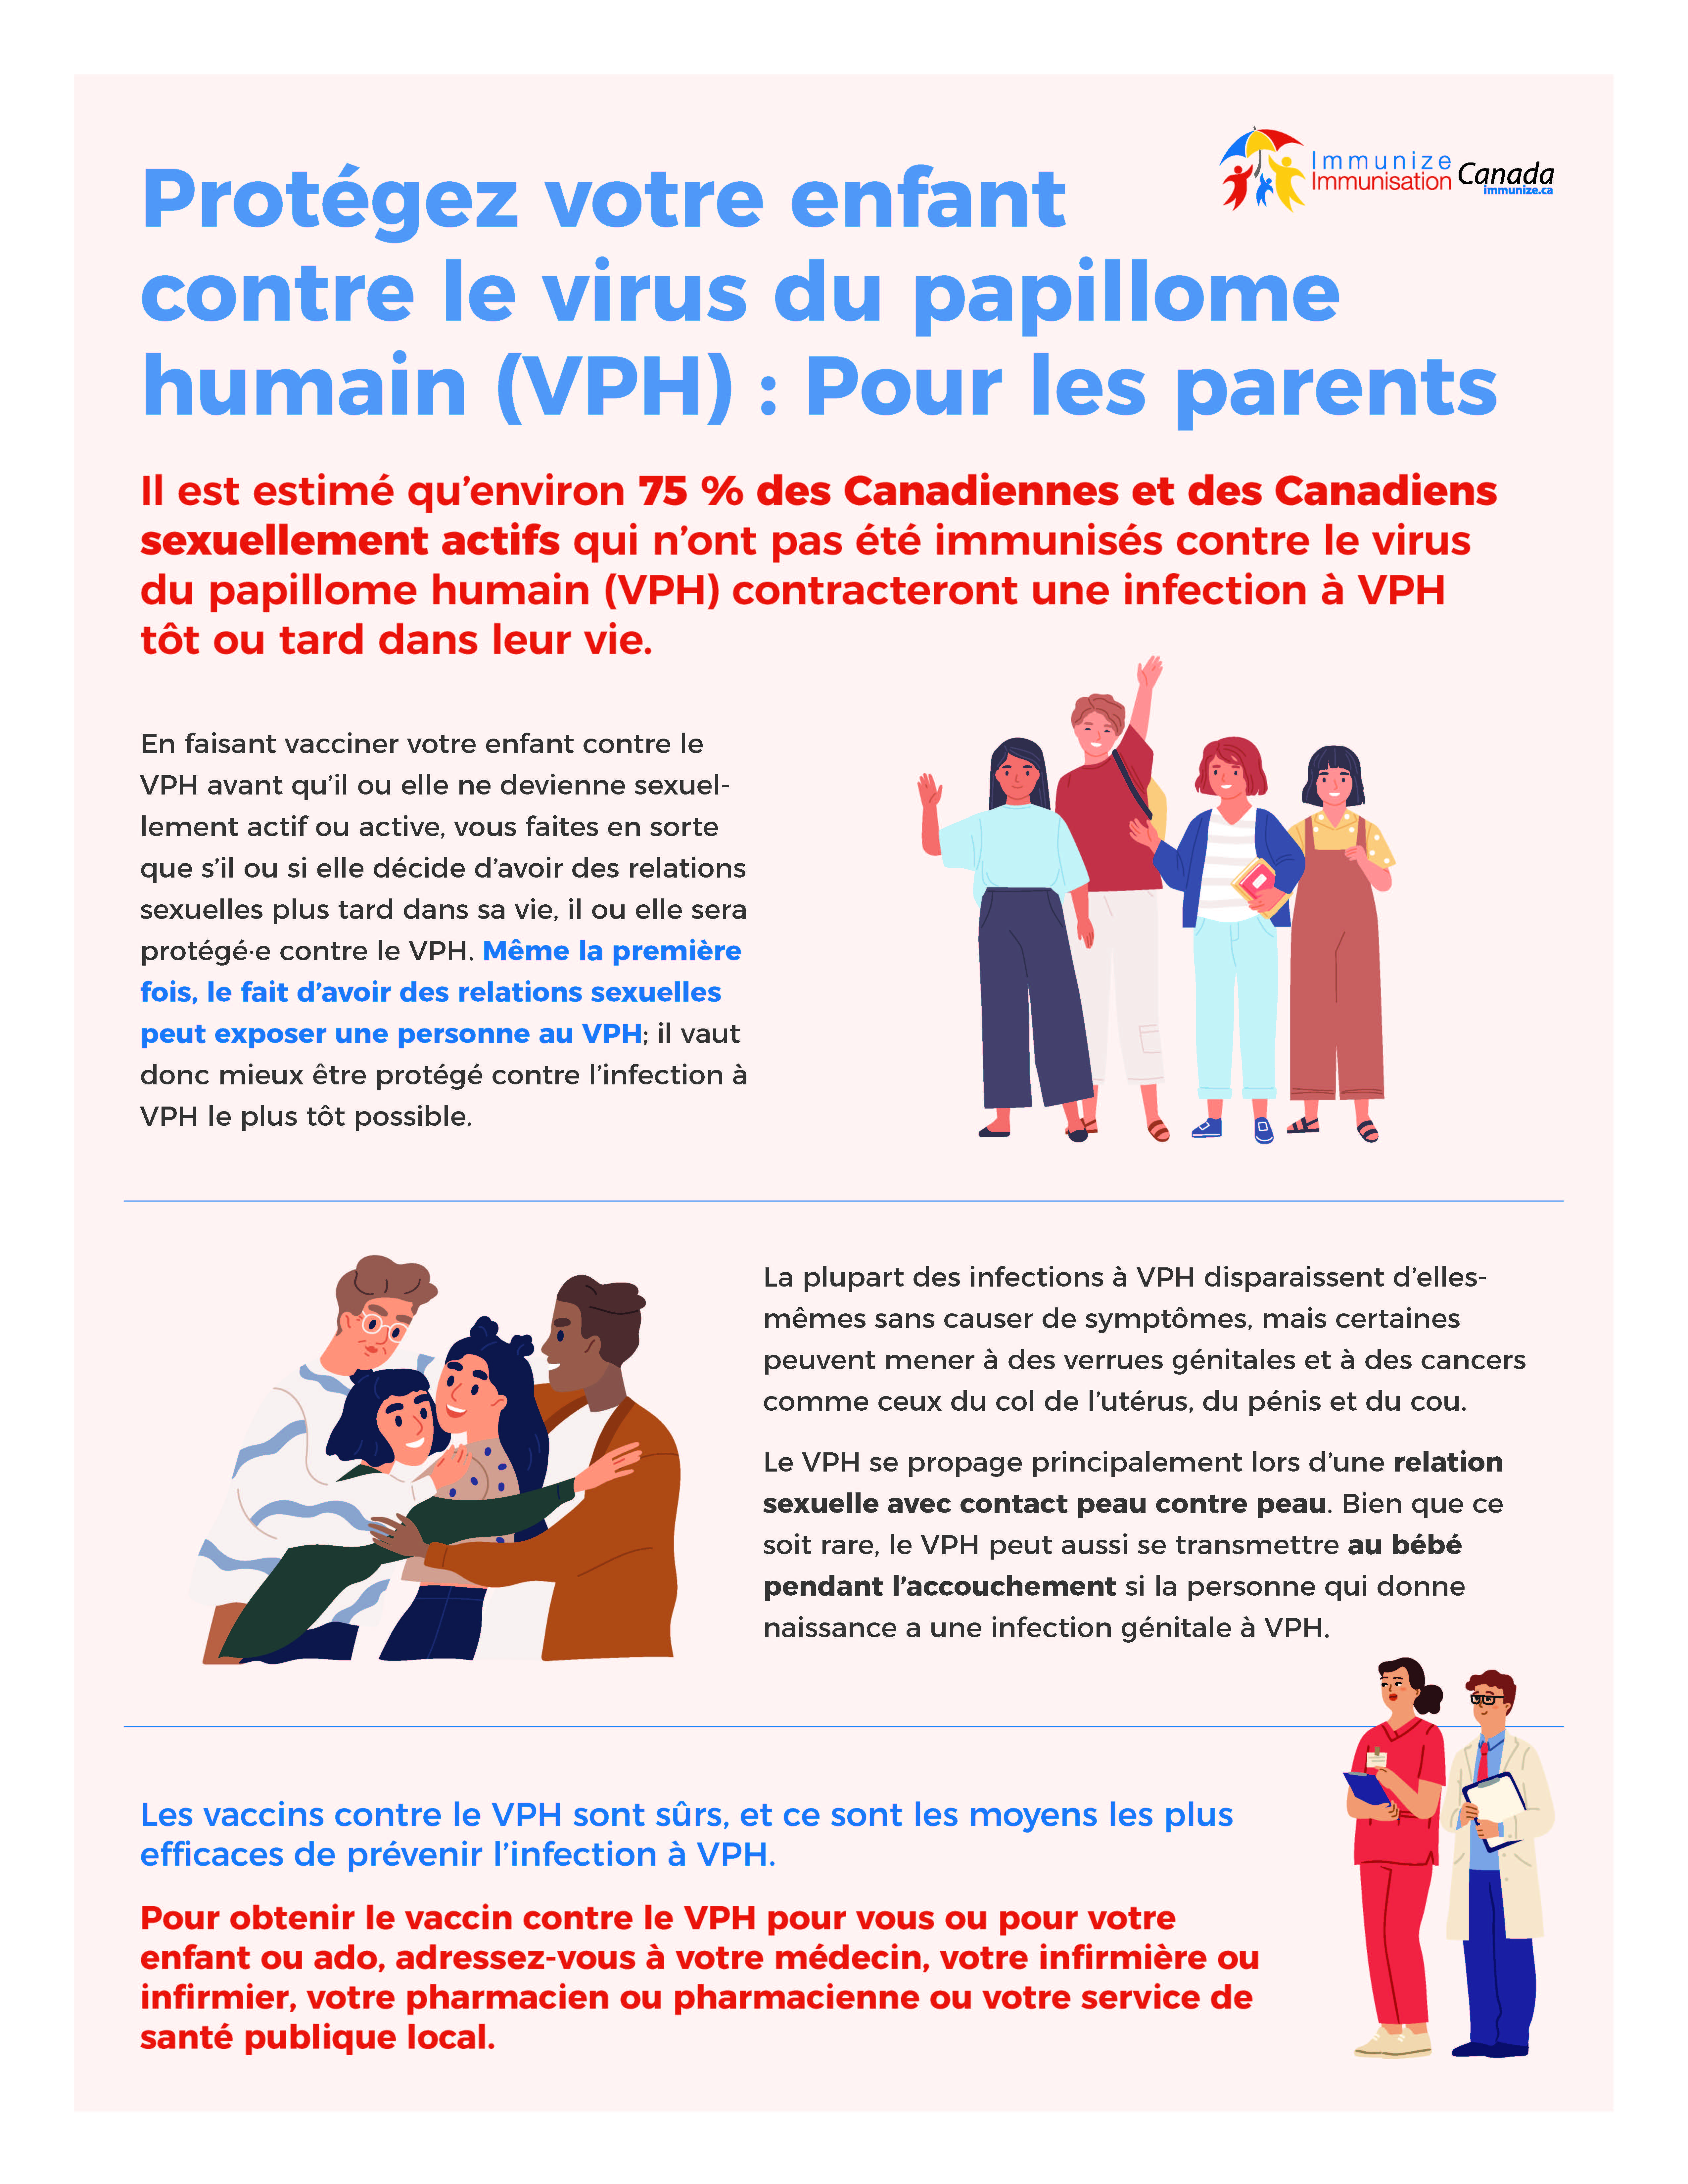 Protéger votre enfant contre le virus du papillome humain (VPH) : Pour les parents